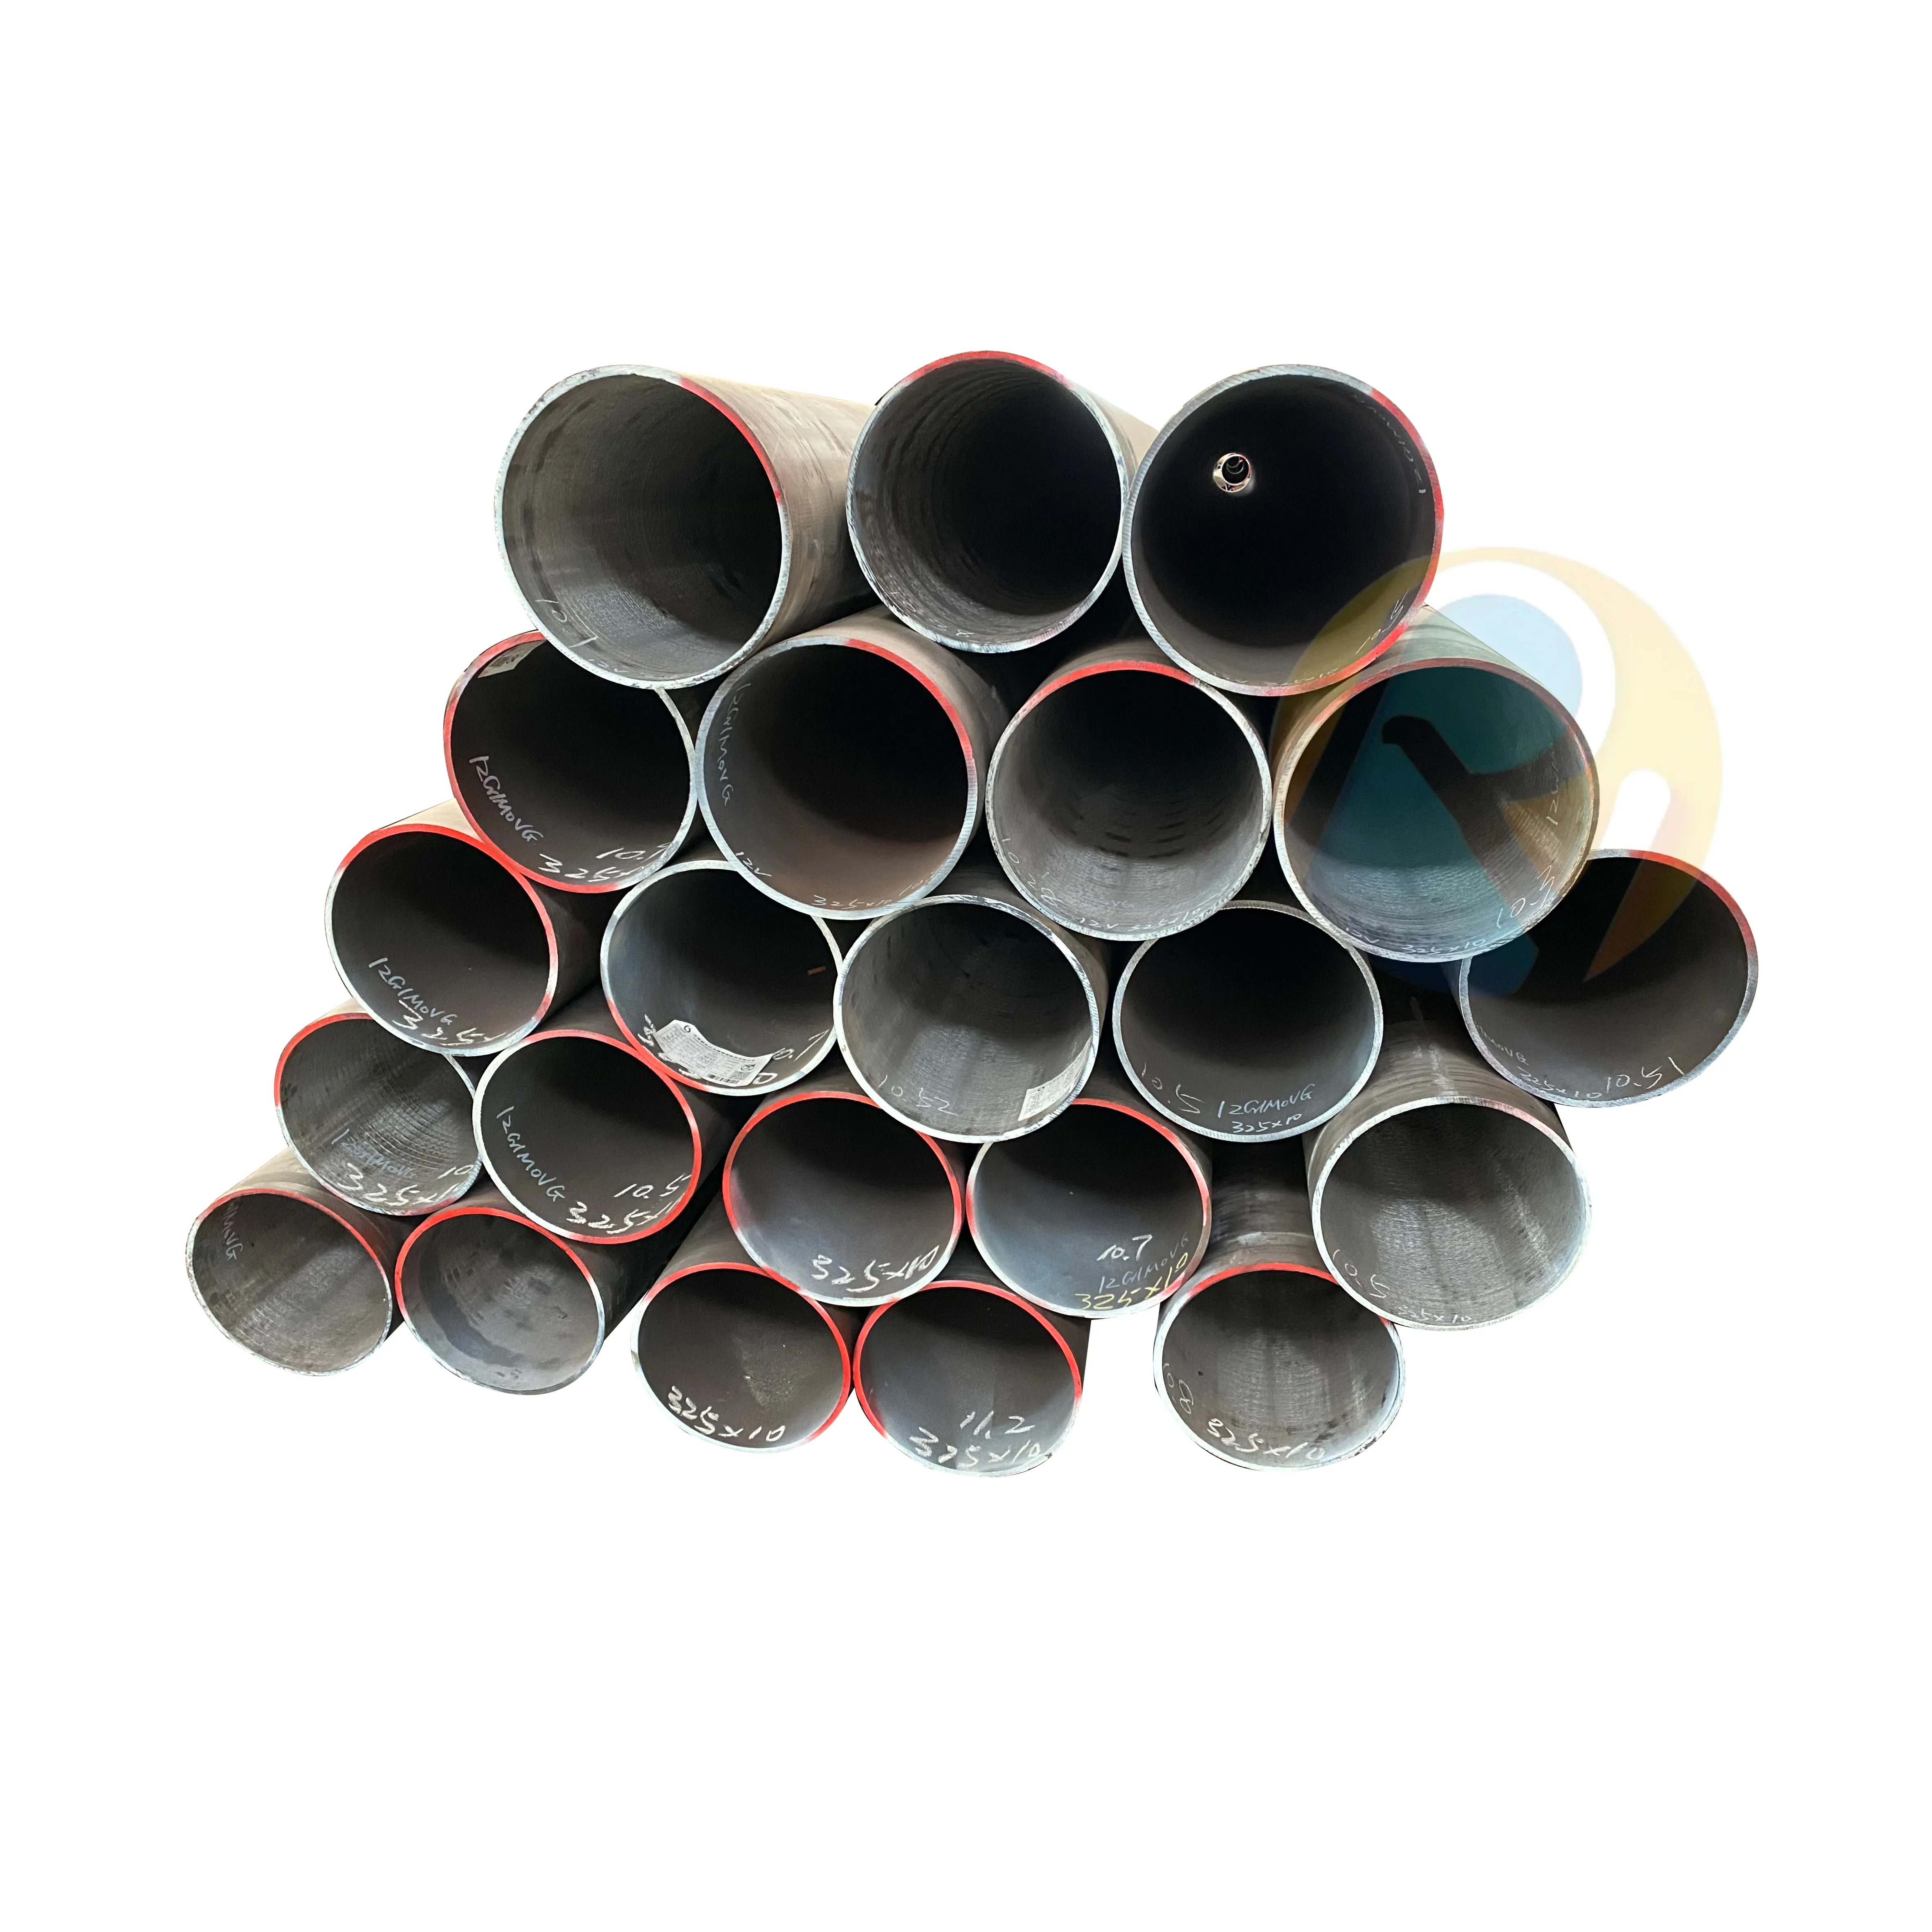 Api 5l b פלדה פחמן שחור פלדה חלקה צינור פלדה x42 x52 x60 קו באיכות גבוהה צינור שמן מעטפת מפעל ספוט